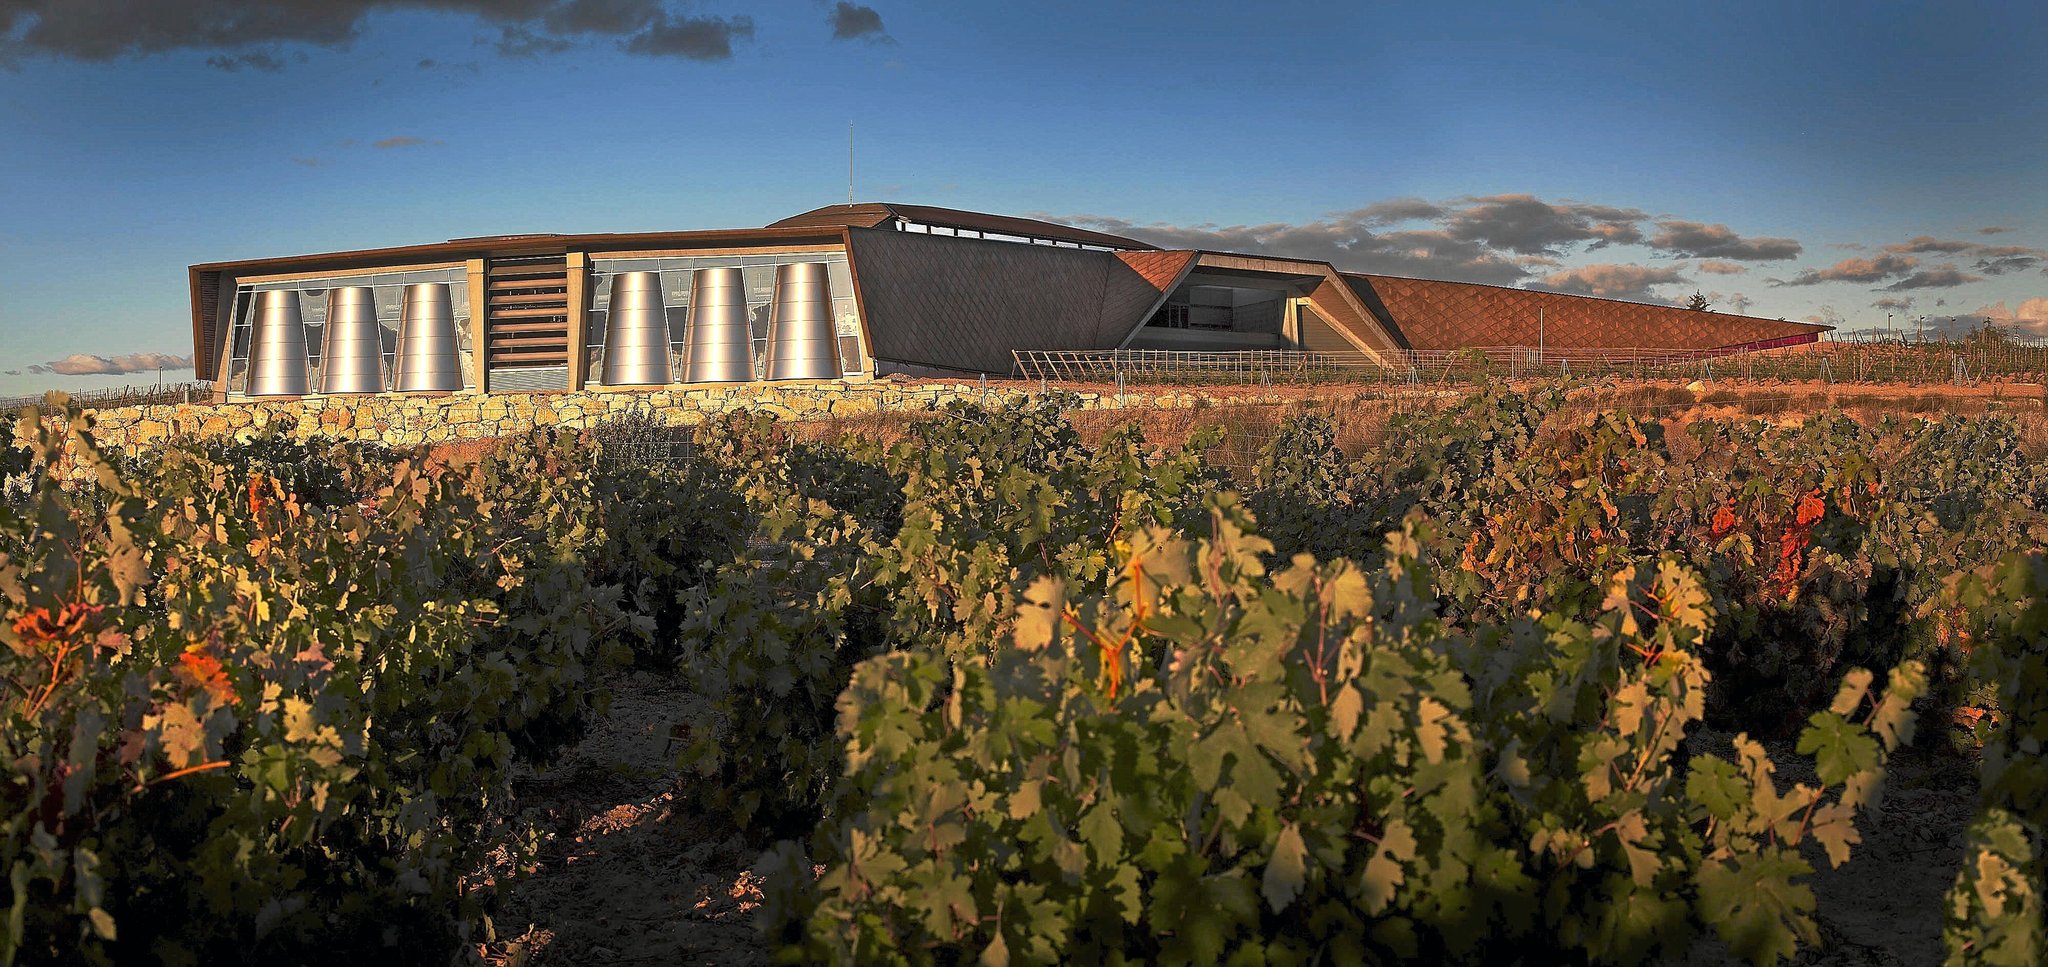 El grupo tiene seis bodegas y elabora vinos en siete denominaciones: Rioja, Ribera del Duero, Navarra, La Mancha, Cava, Rueda y Albariño.